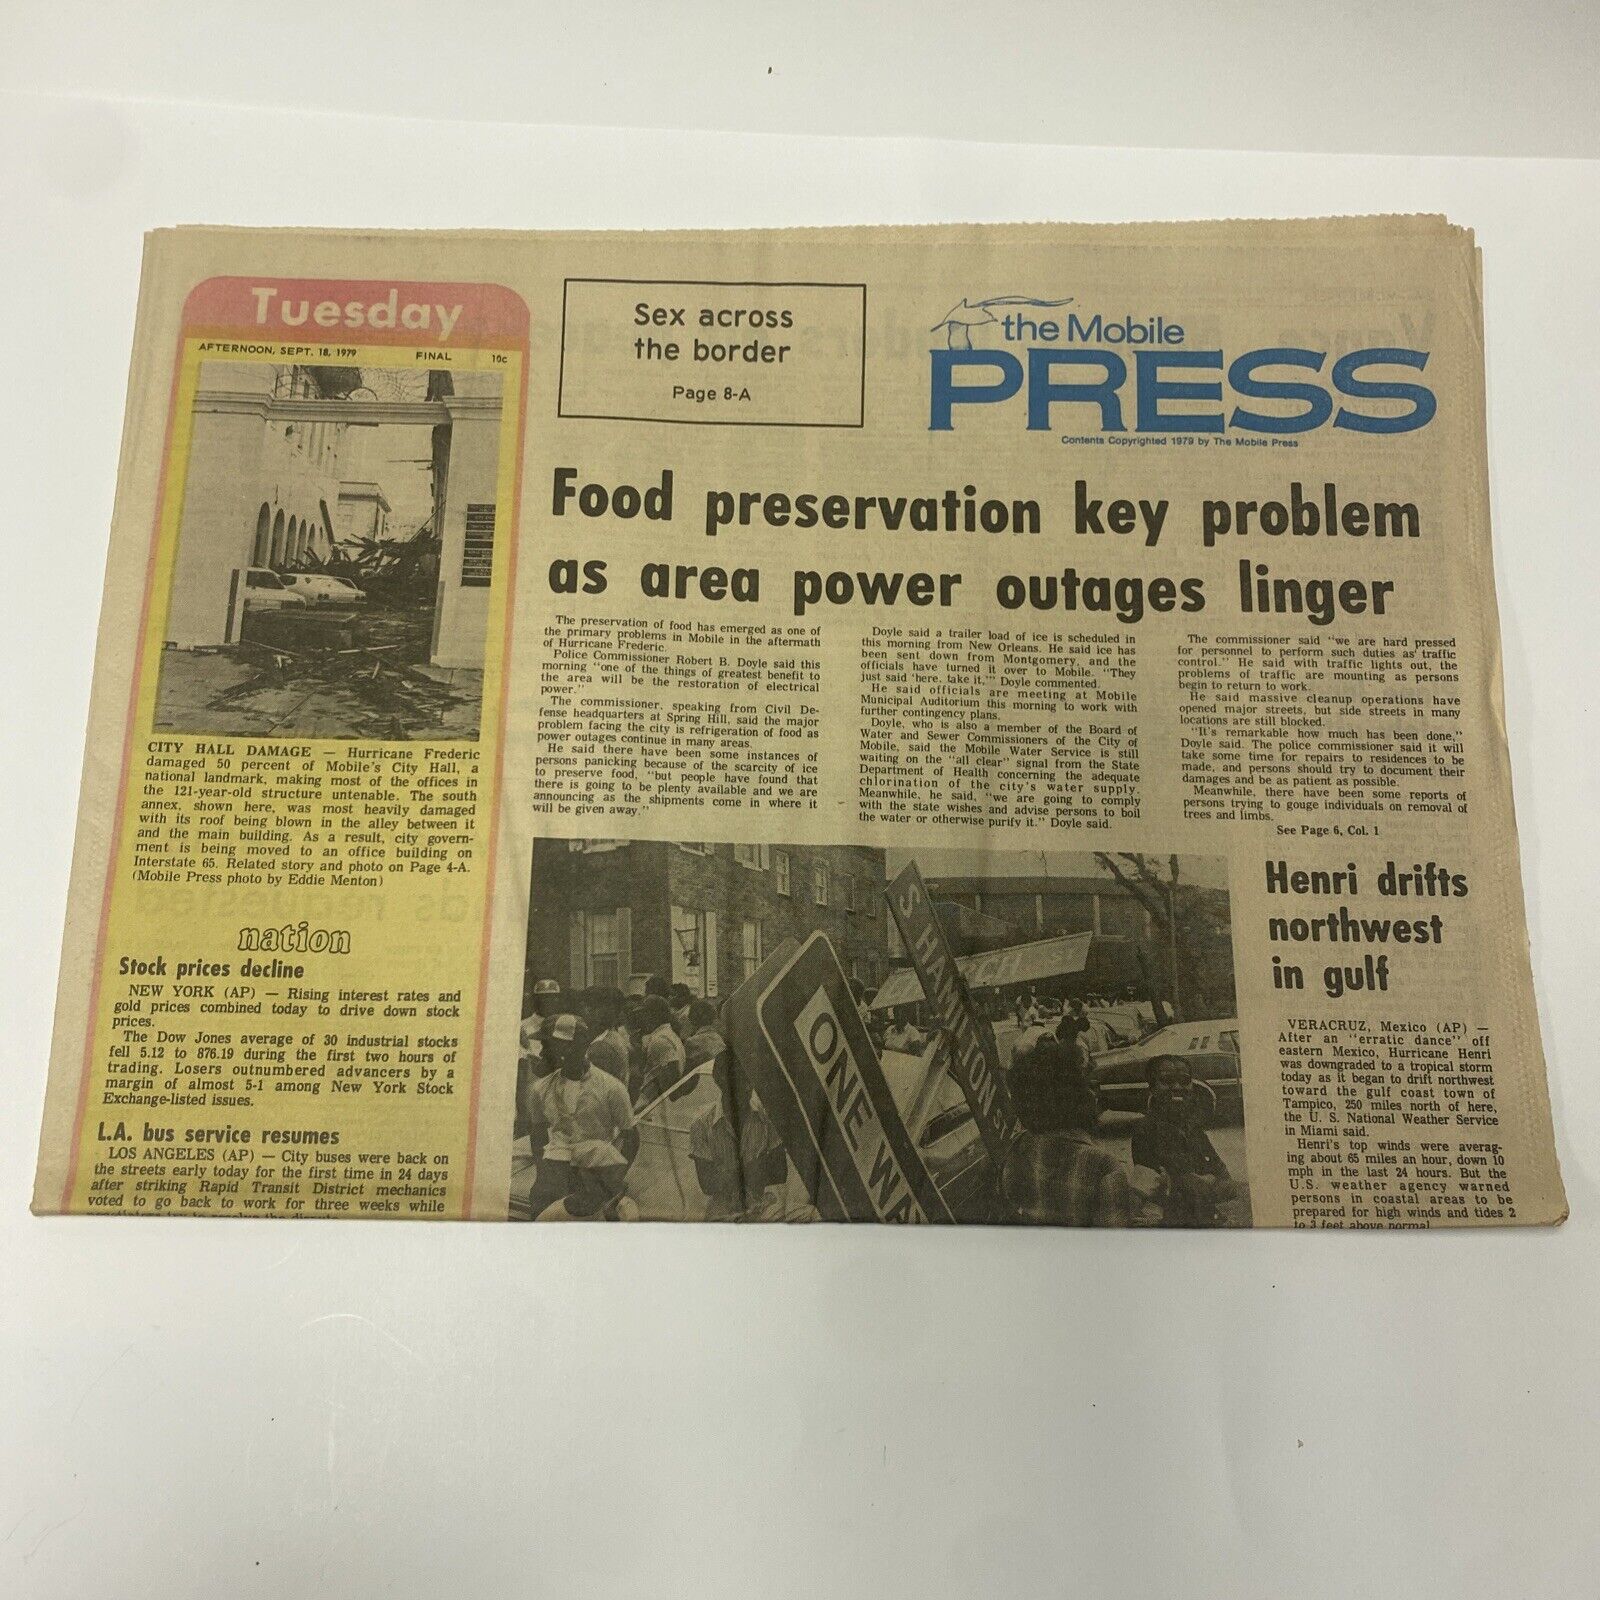 The Mobile Press Sept 18, 1979 Food Preservation Key Problem Newspaper